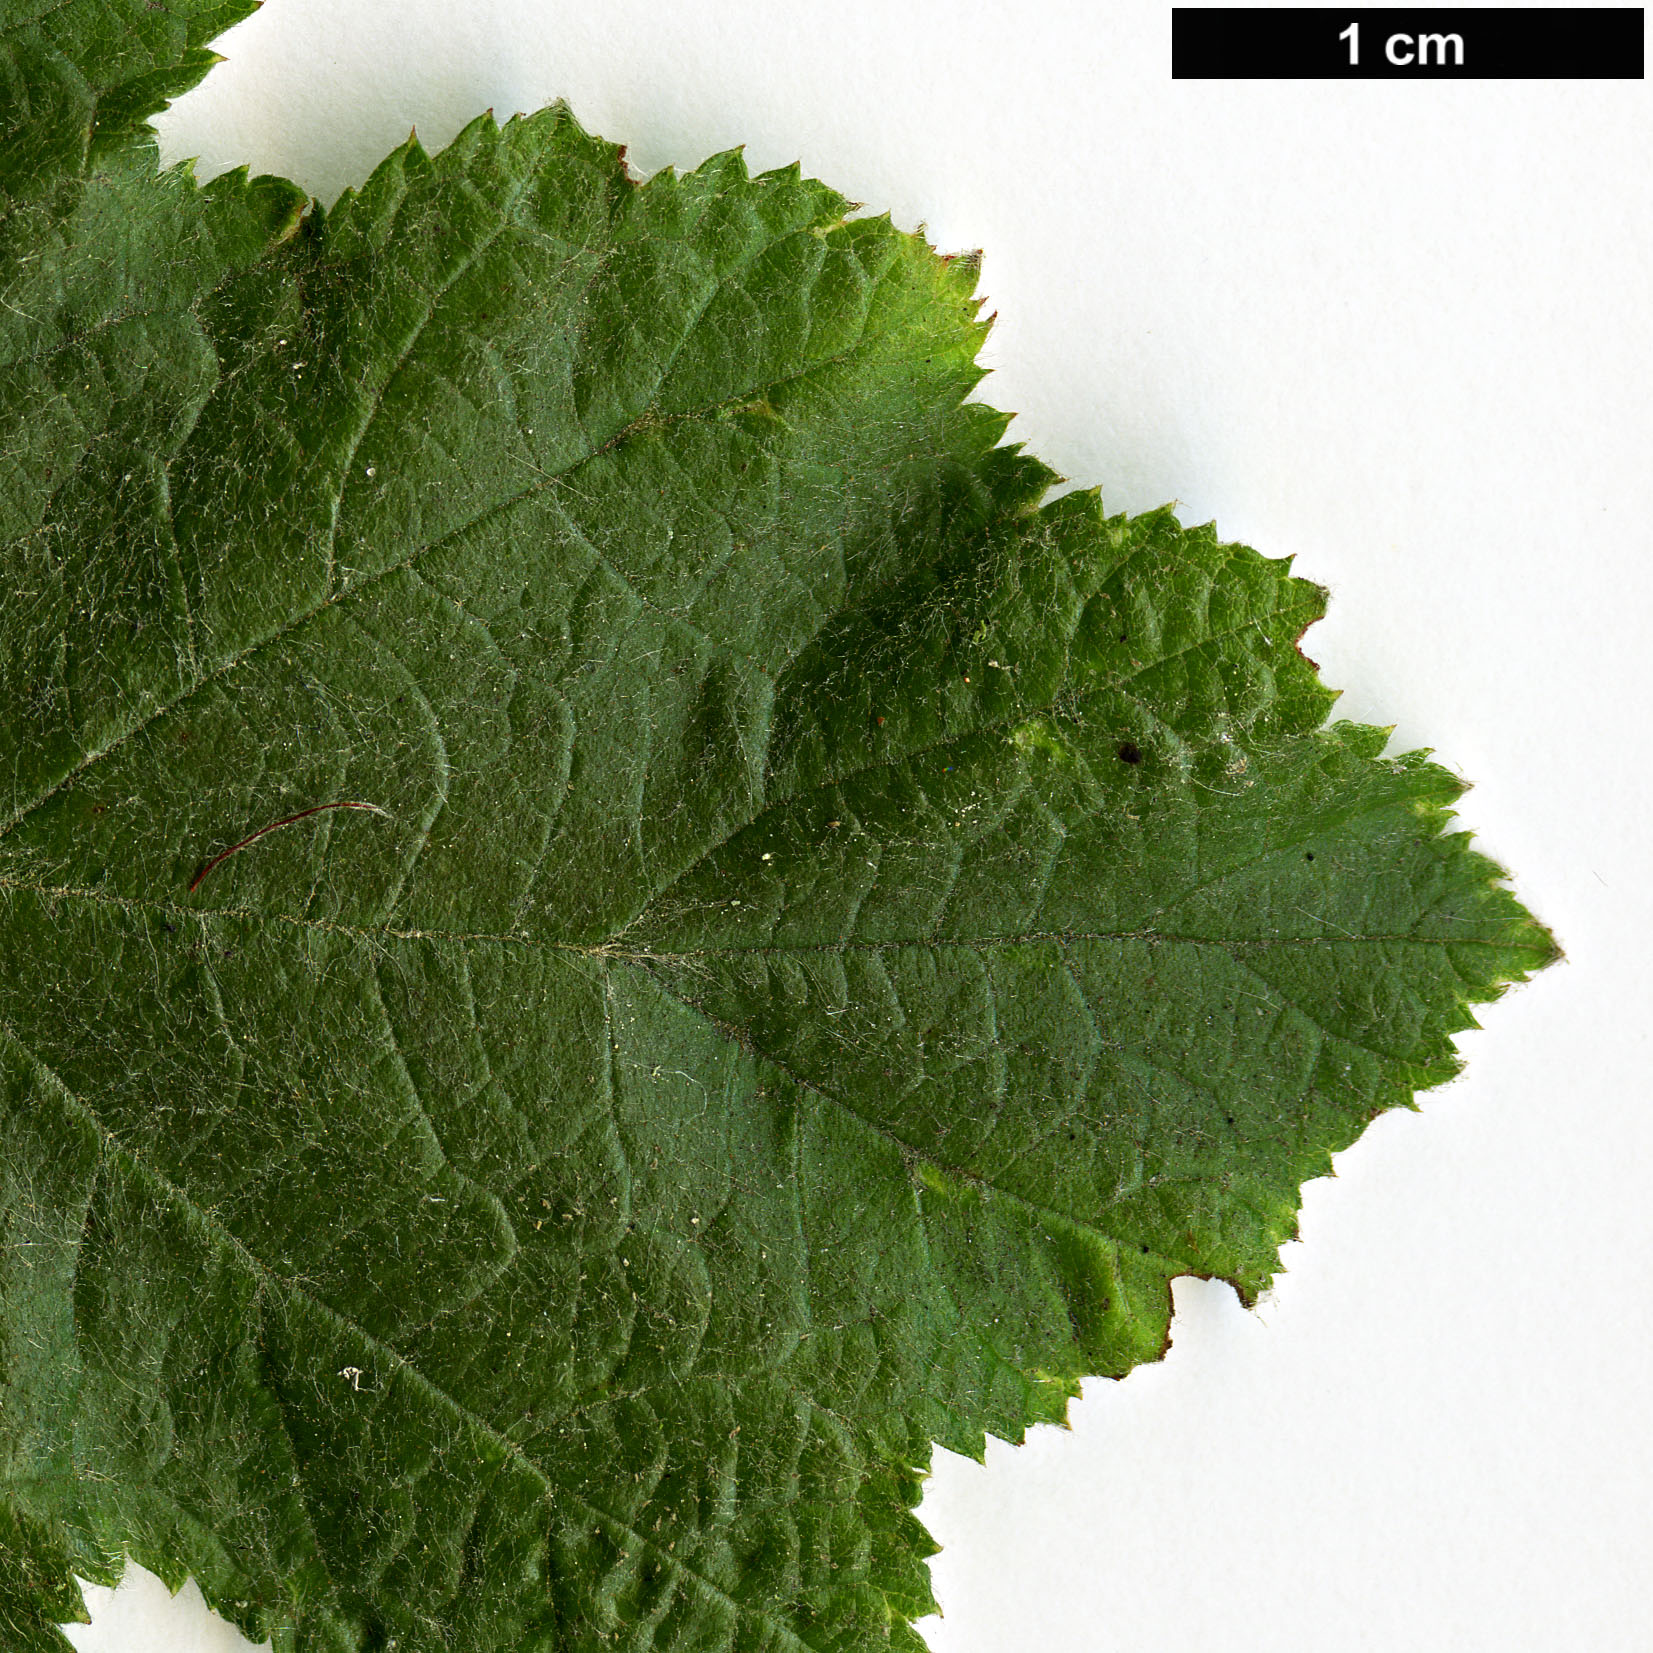 High resolution image: Family: Rosaceae - Genus: Rubus - Taxon: arachnoideus